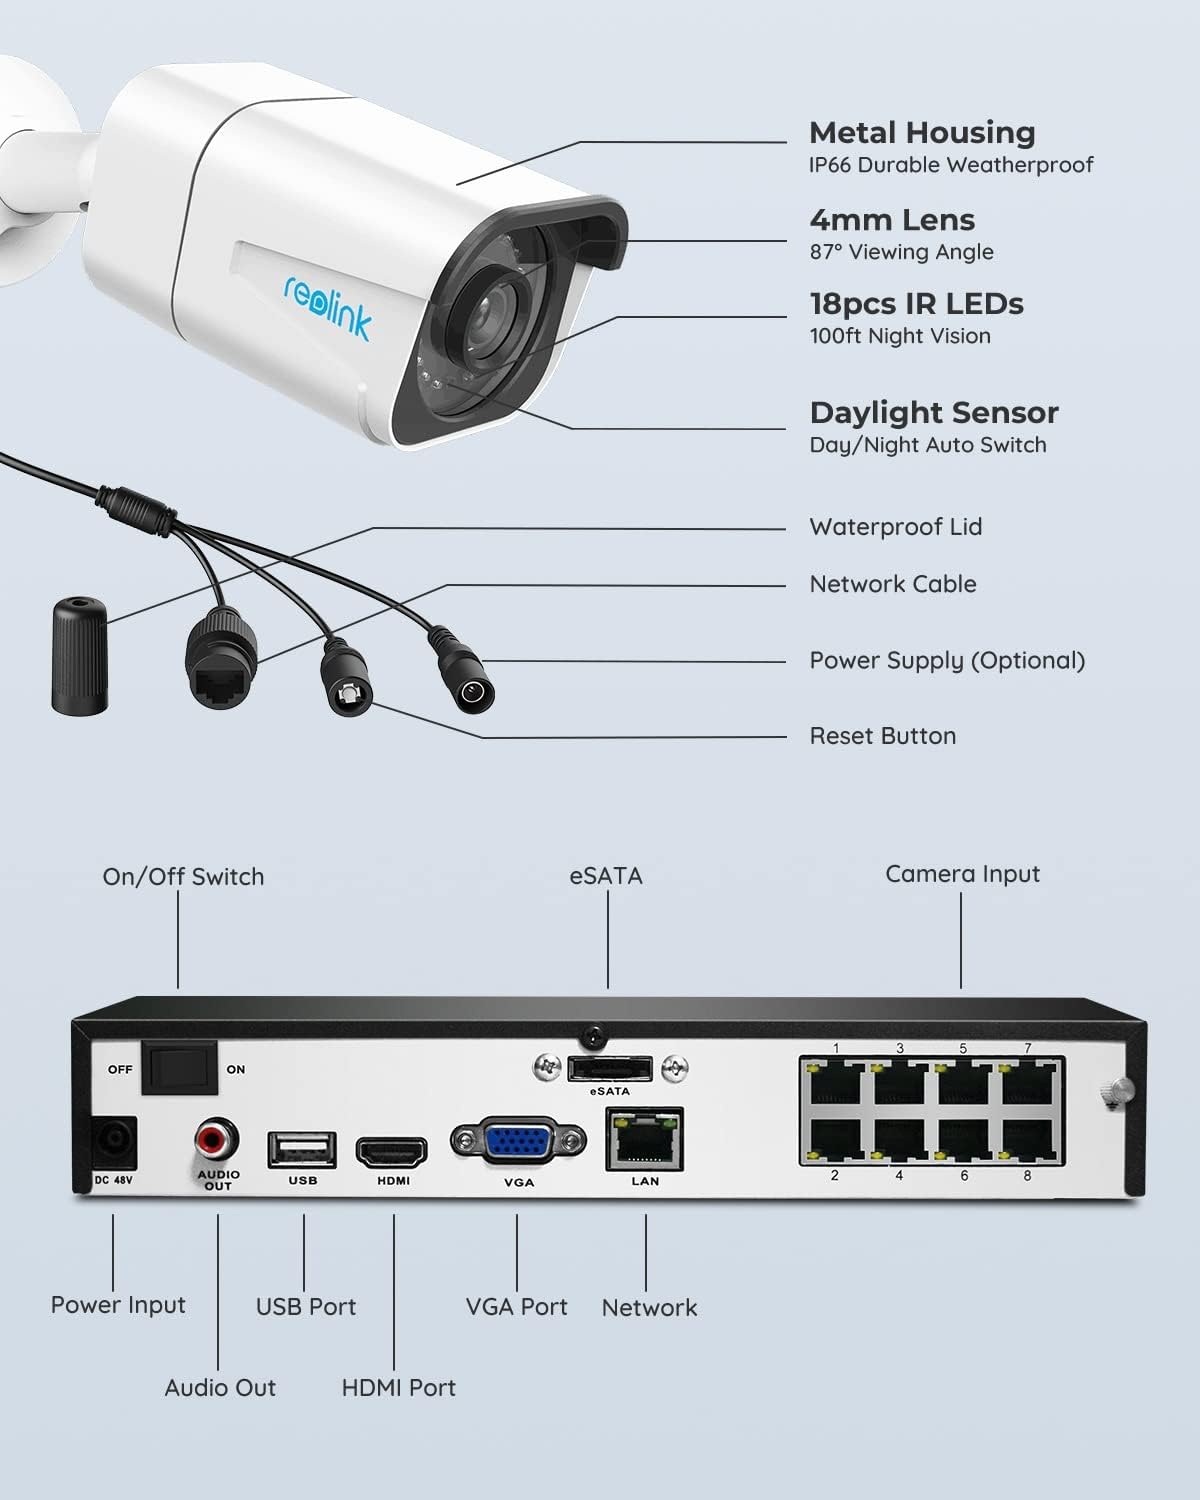 Sistem kompleta varnostnih kamer Reolink 4K PoE H.265, 4 kosi 8 MP žične zunanje CCTV IP kamere za zaznavanje oseb/vozil in 8-kanalni NVR z 2 TB trdim diskom za 24/7 snemanje zvoka nočnega vida, RLK8-800B4